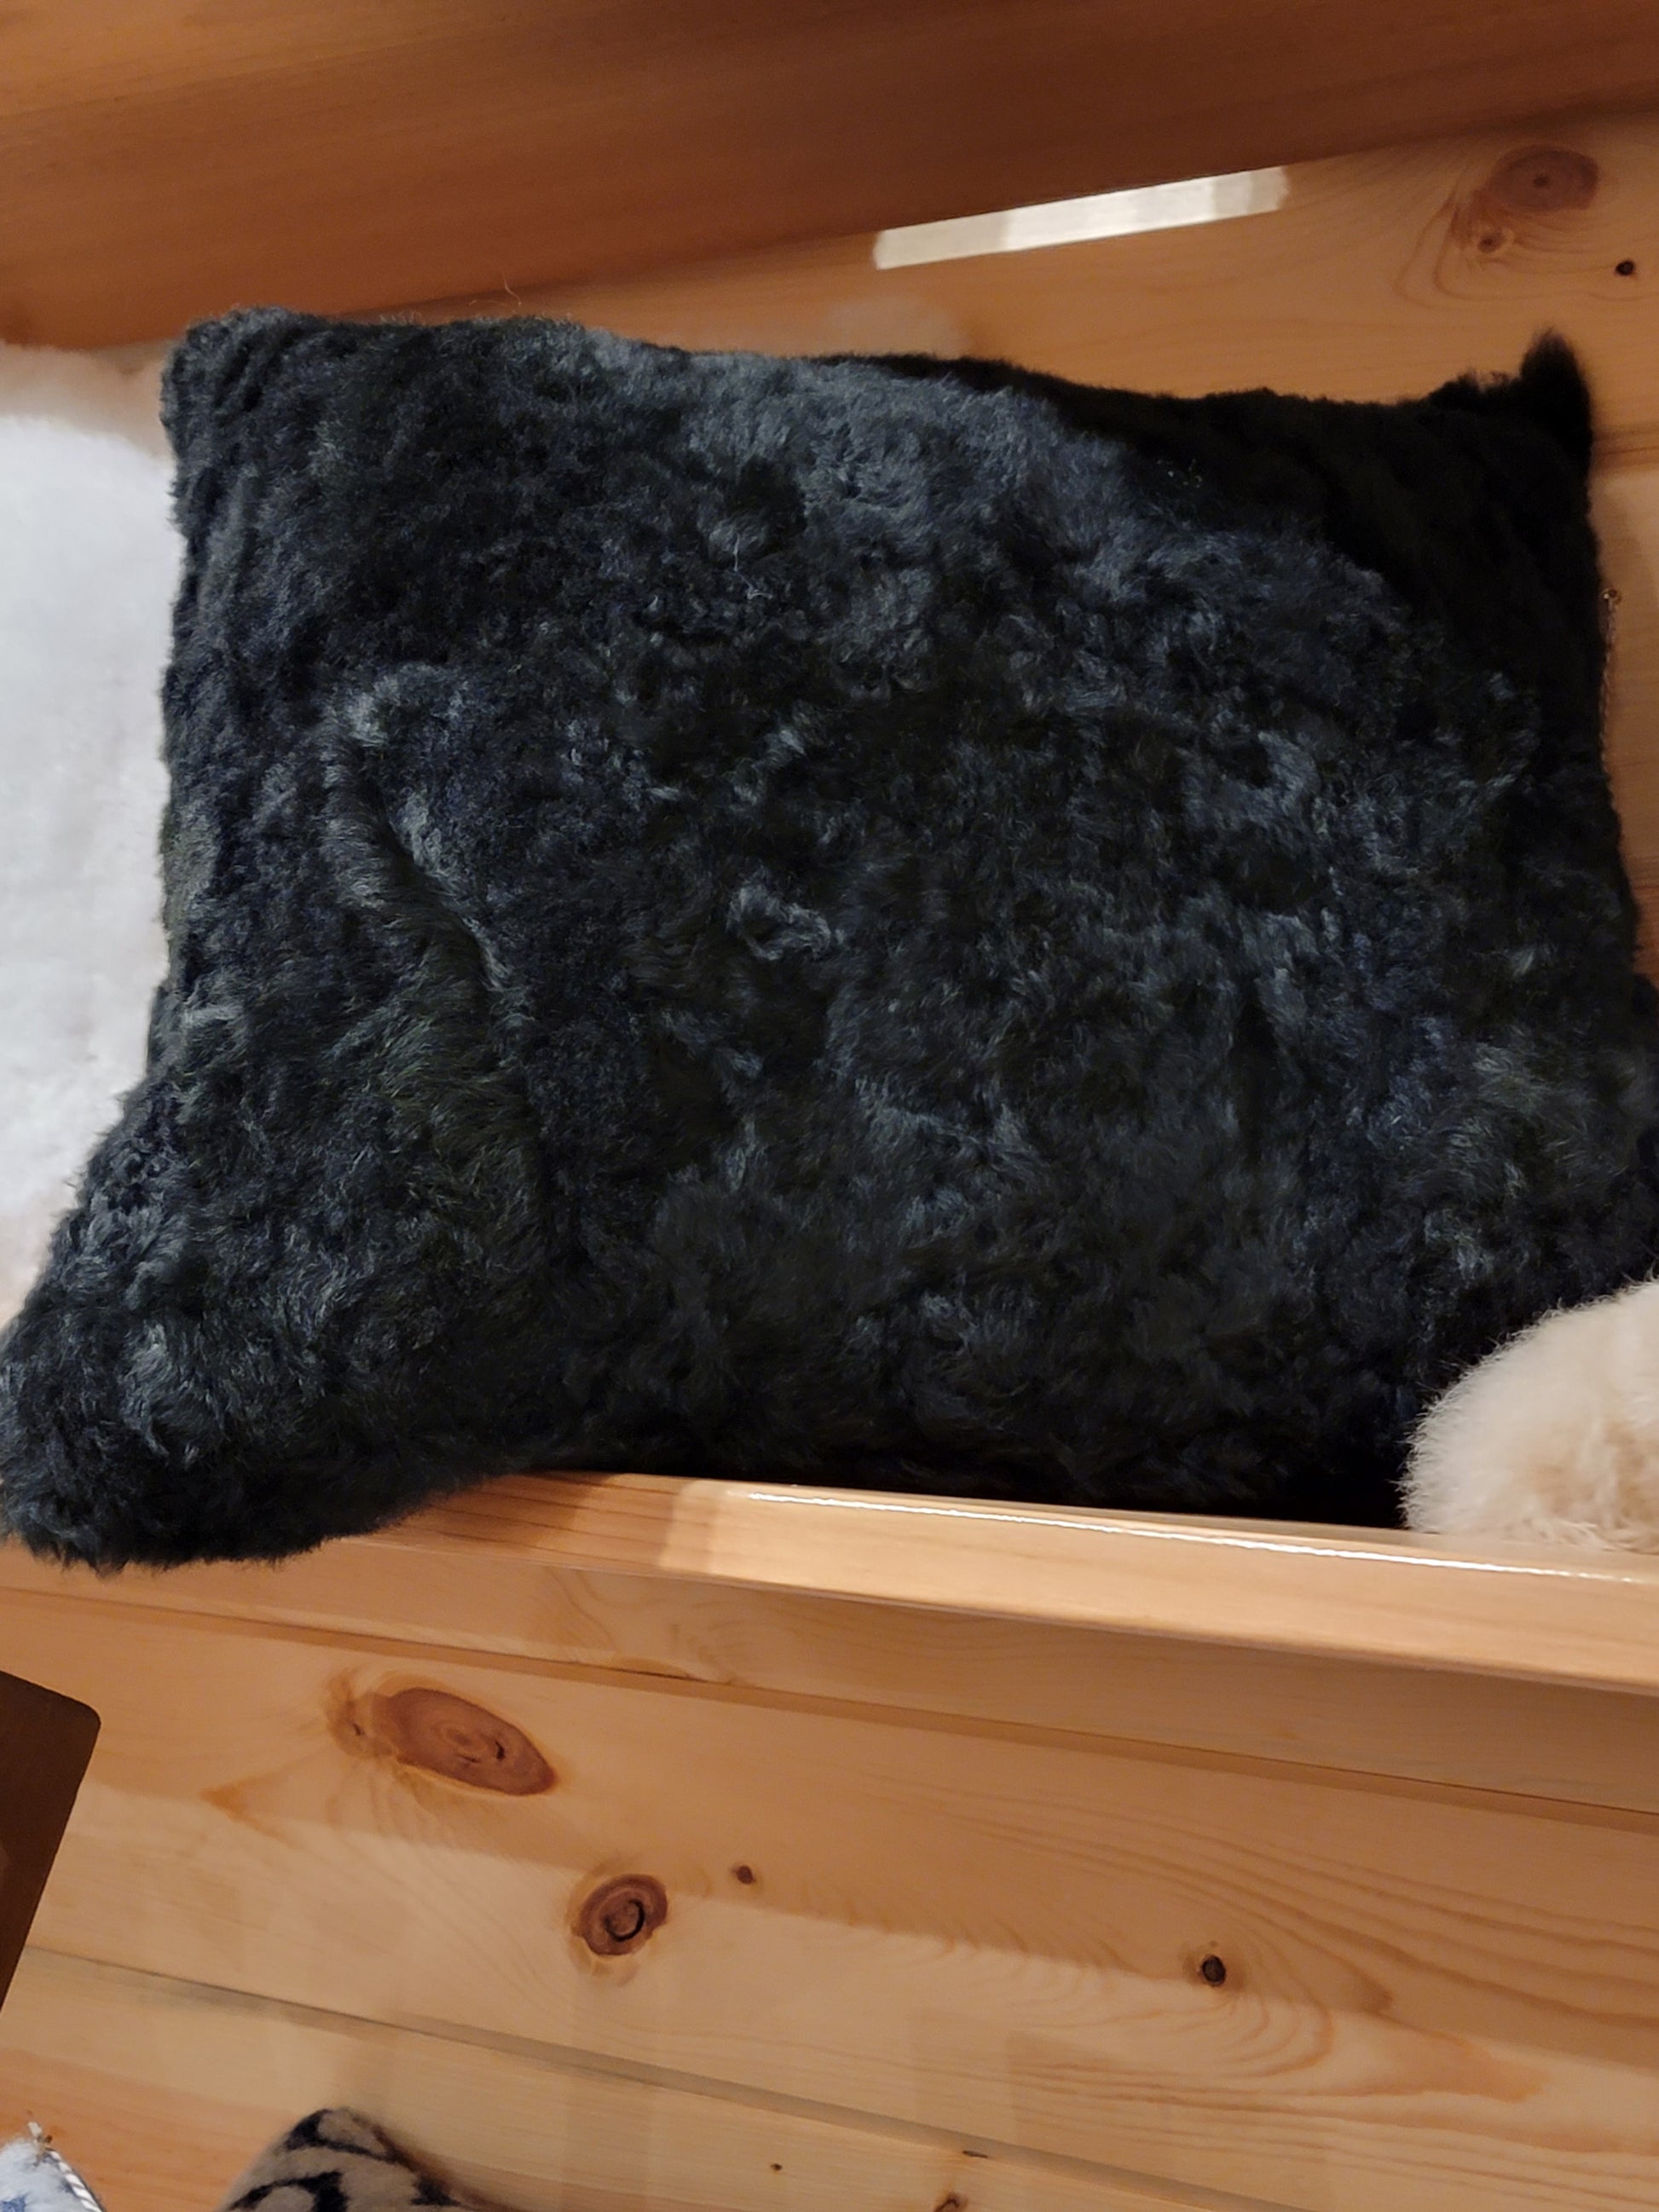 black fluffy pillows in a bin